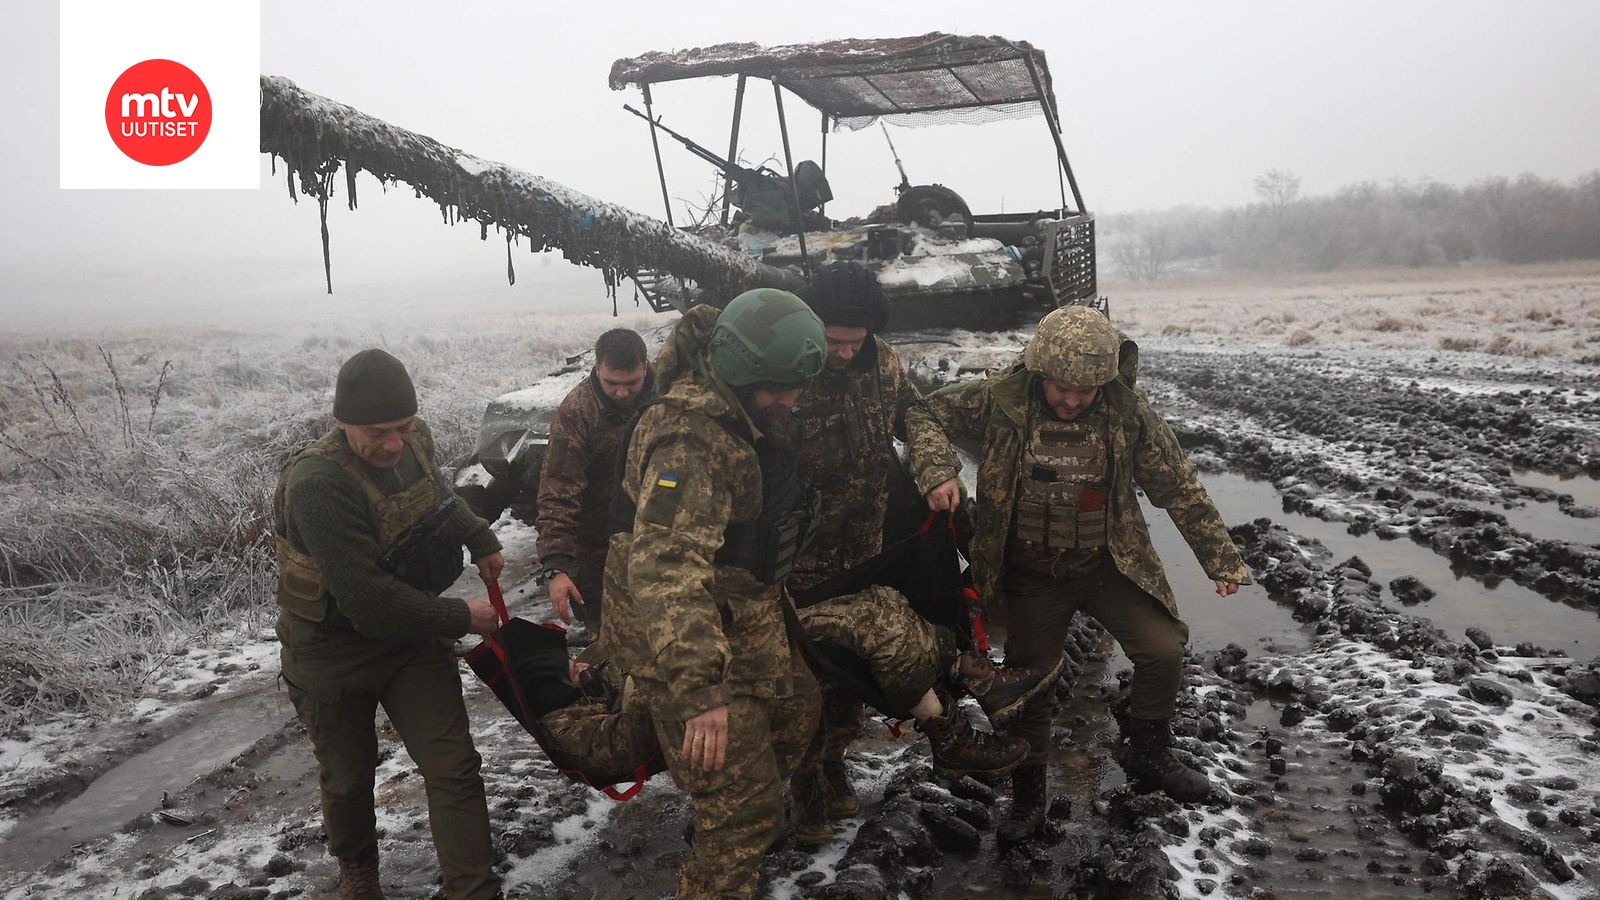 Mtv Uutiset Seurasi Ukrainan Sotaa Joulukuuta Mtvuutiset Fi